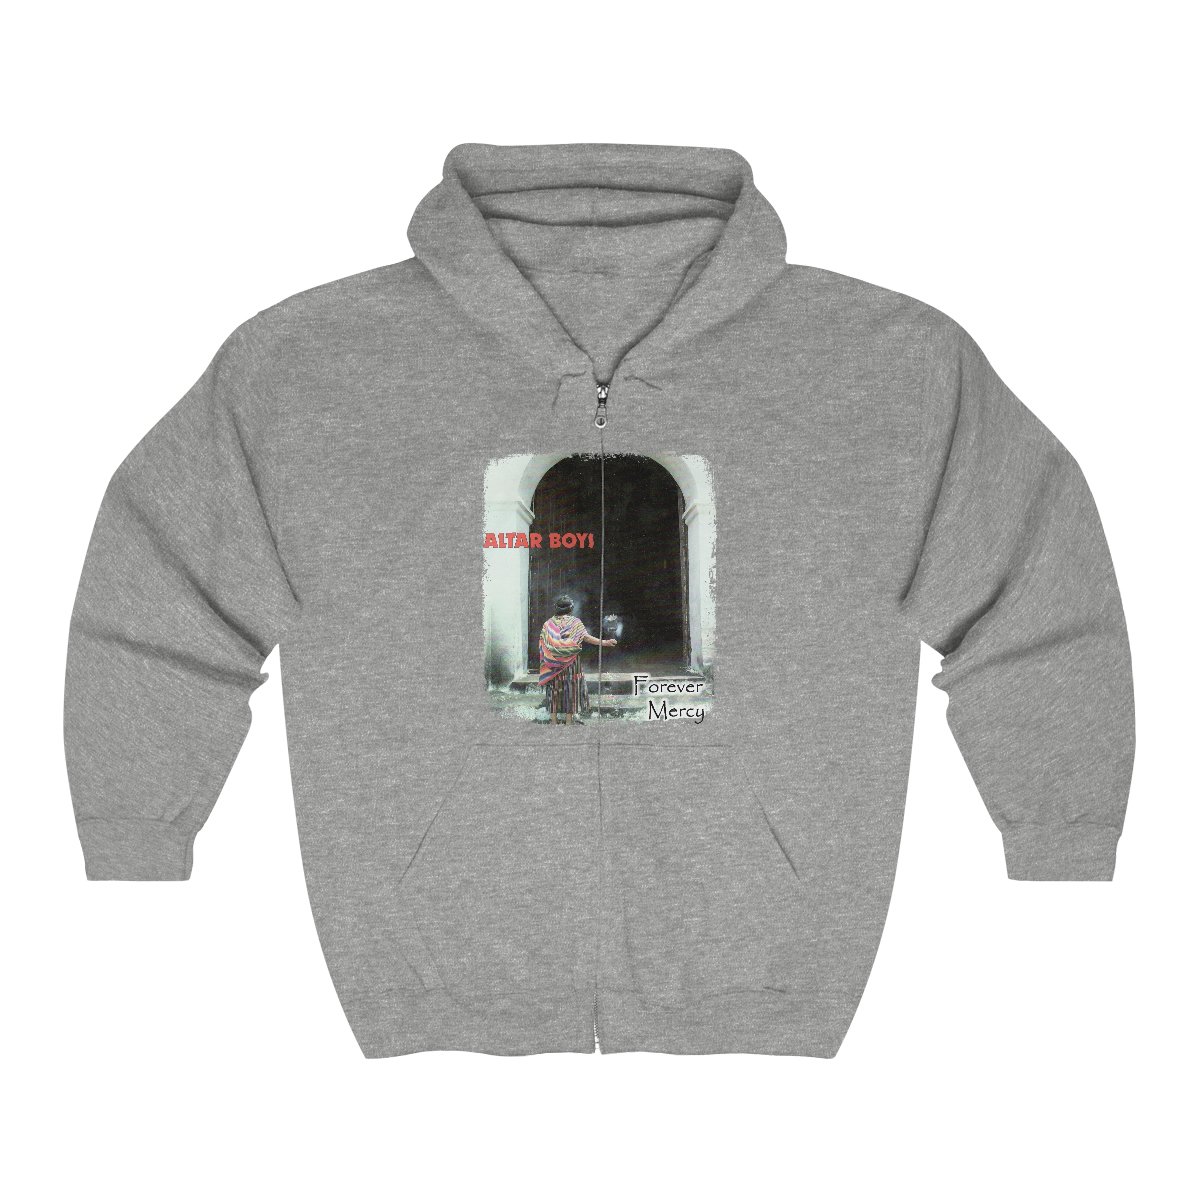 Altar Boys – Forever Mercy Full Zip Hooded Sweatshirt